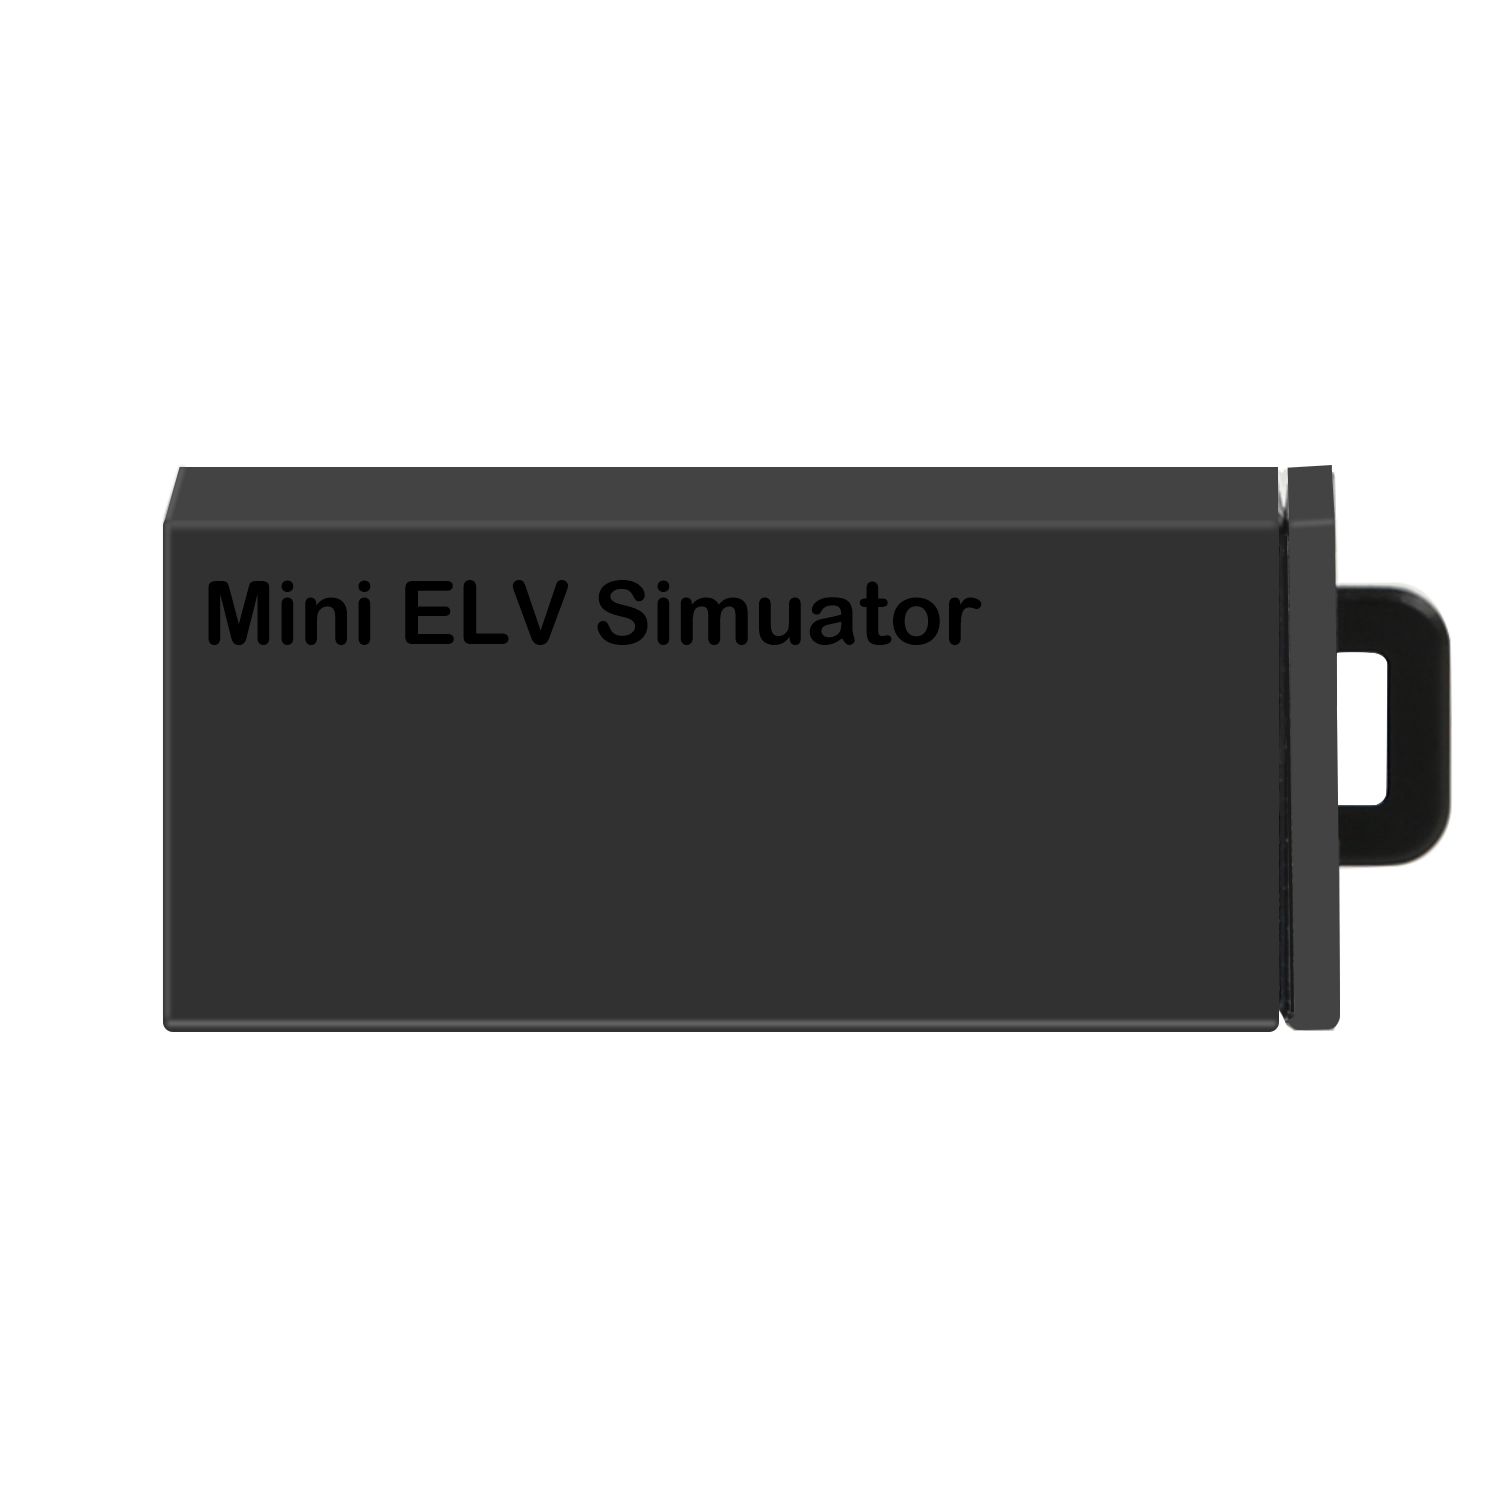  Xhorse VVDI MB Mini ELV Simulator for Benz 204 207 212 5pcs/set Free Shipping